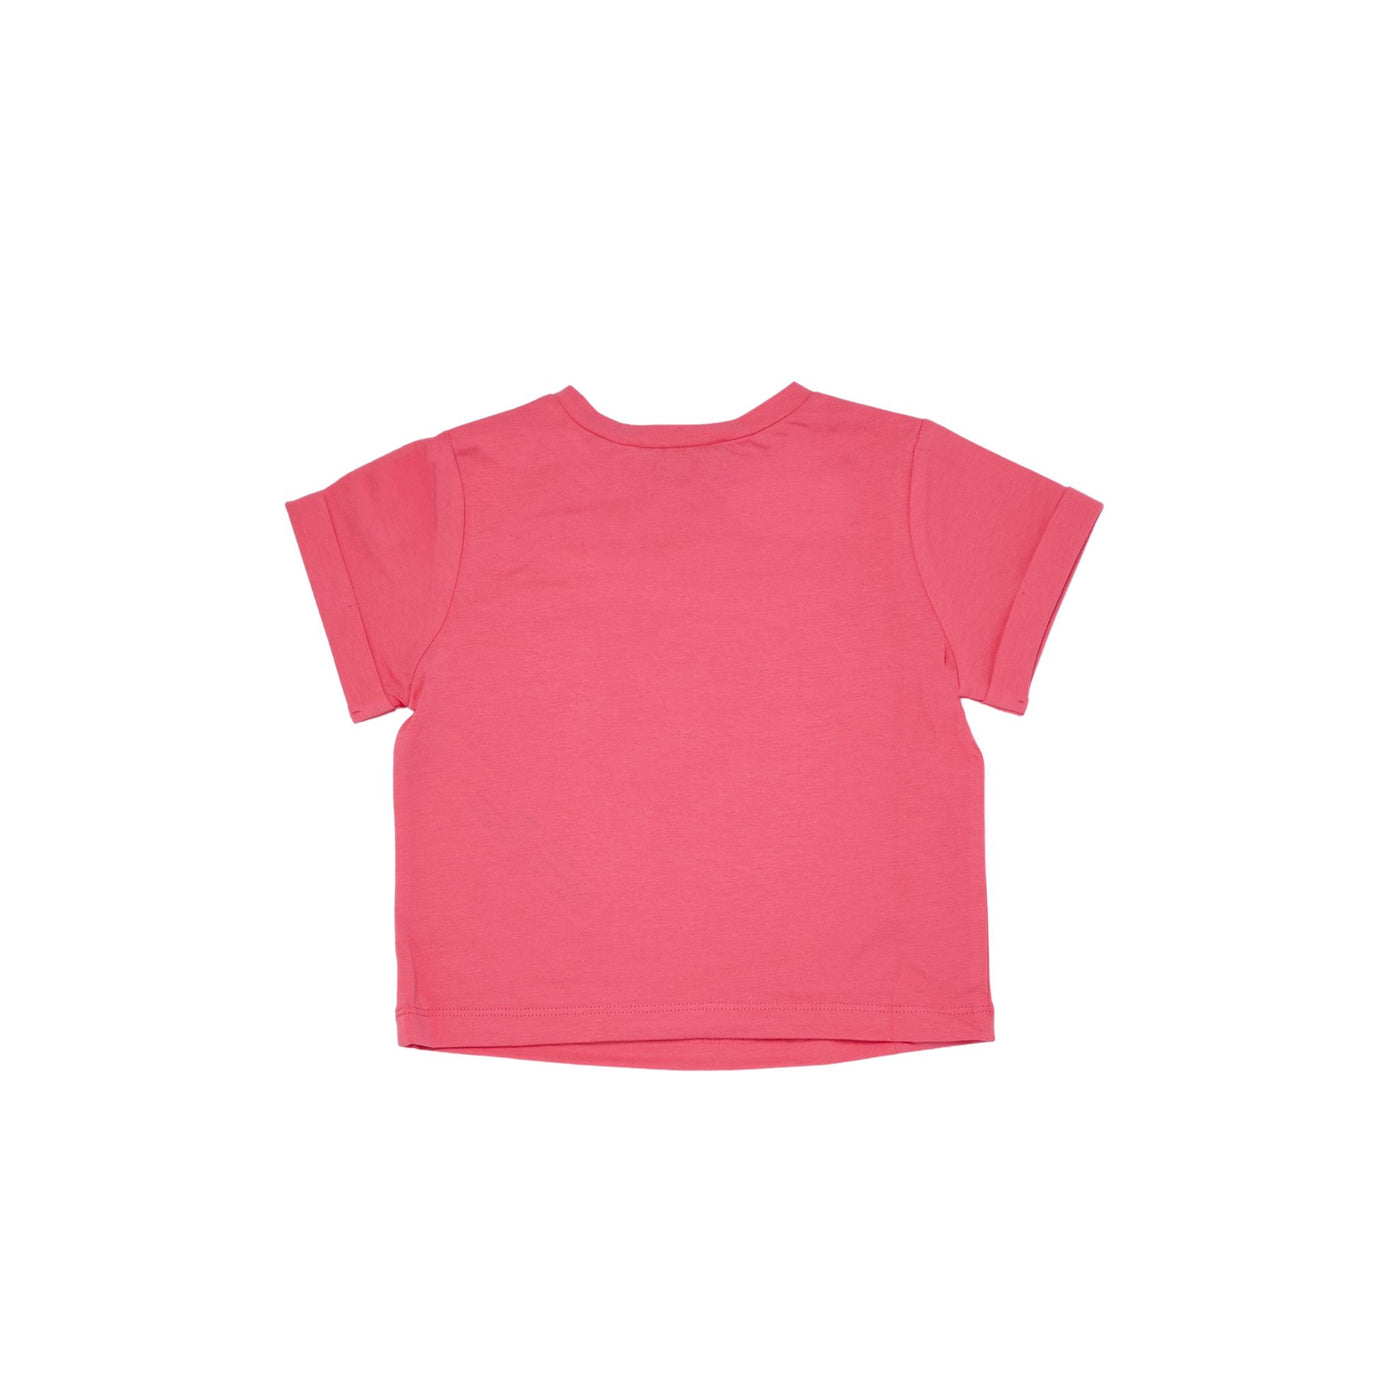 T-shirt Bambina realizzata in morbido cotone con risvolto sulle maniche